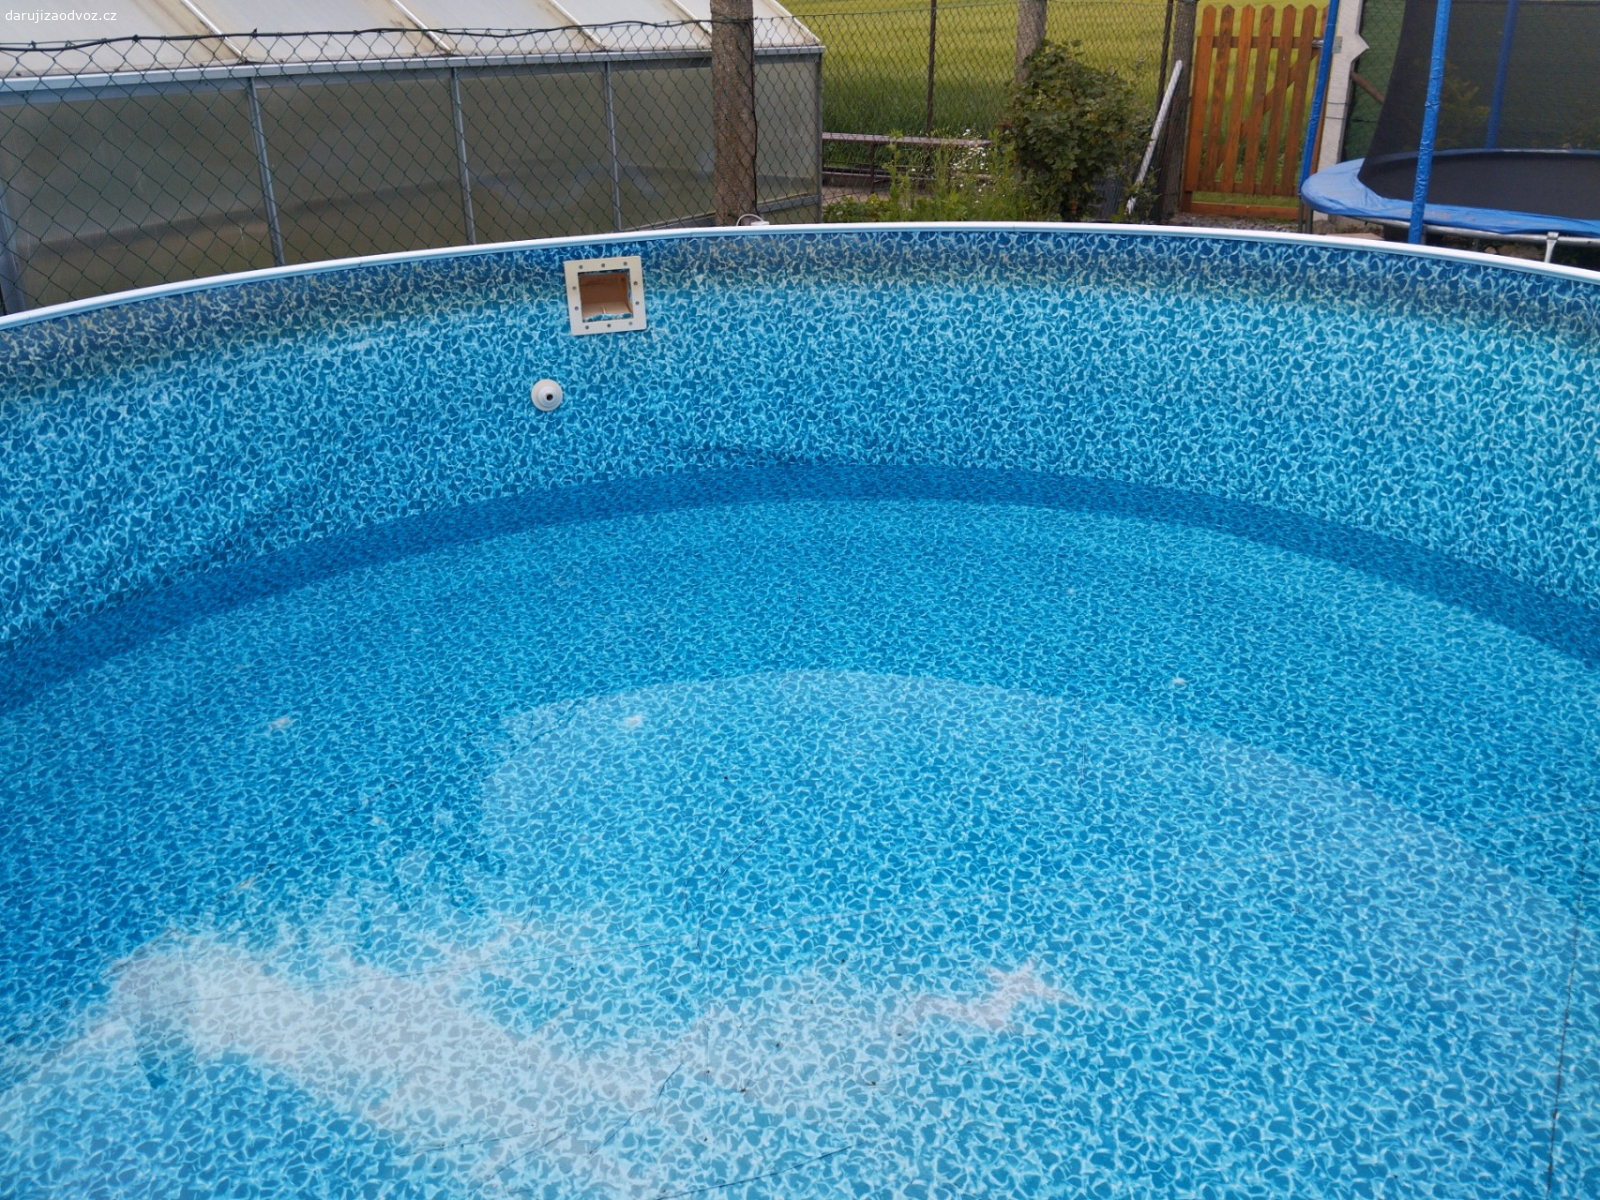 bazén 366x107. bazén bez filtrace v plachtě malá dírka únik asi 1 cm za tři dny jinak bez problémů